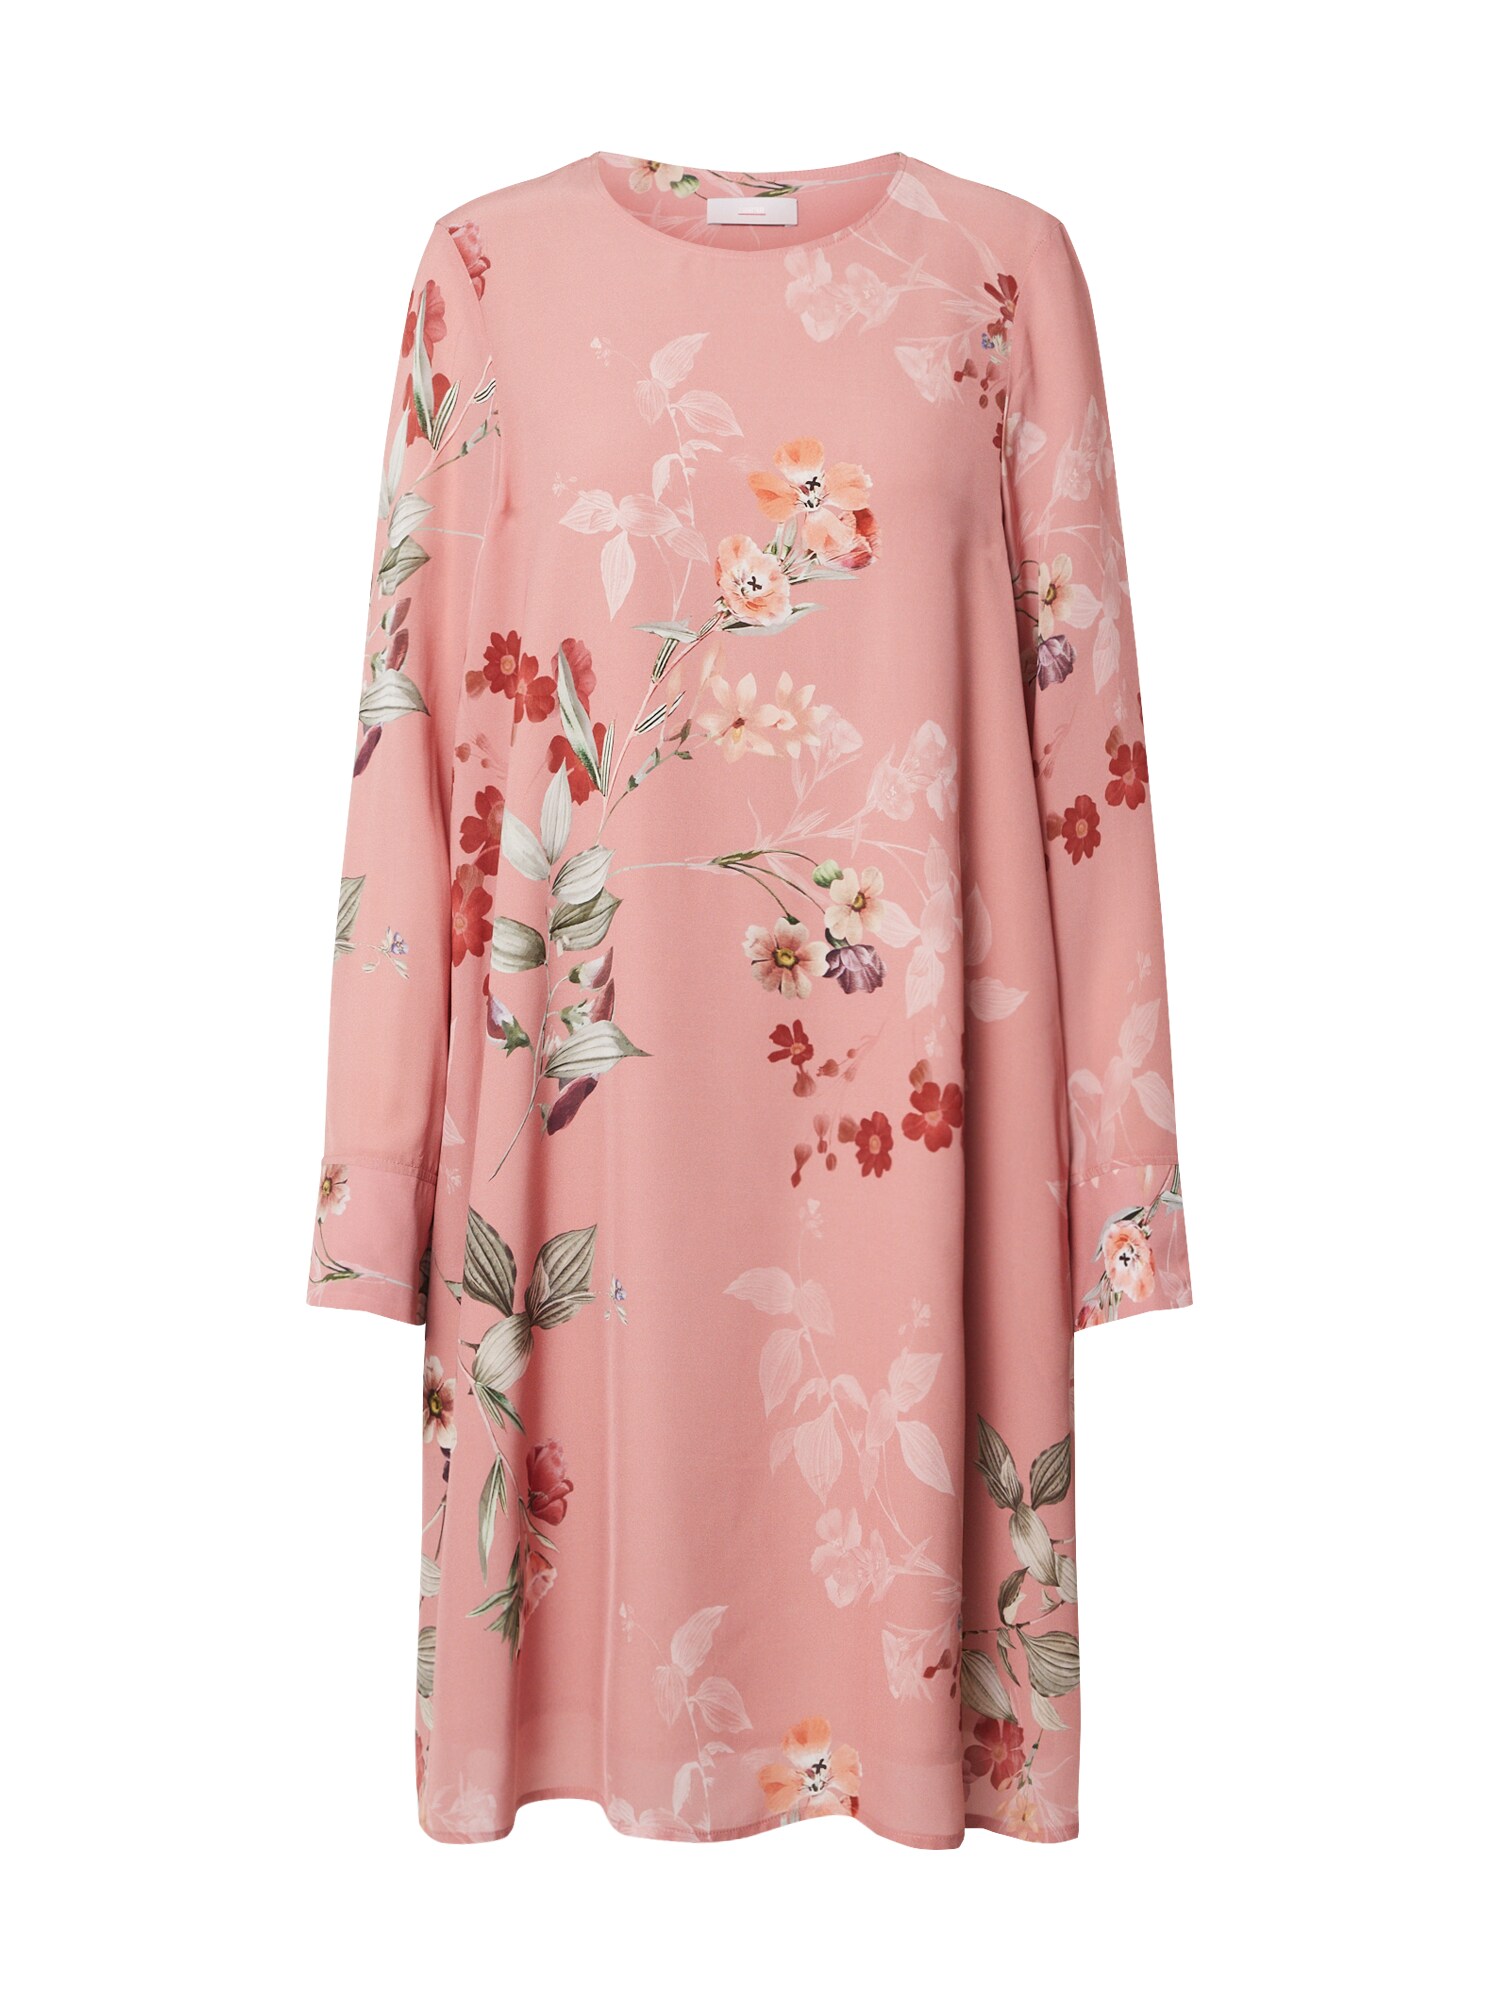 CINQUE Suknelė 'DANO'  mišrios spalvos / ryškiai rožinė spalva